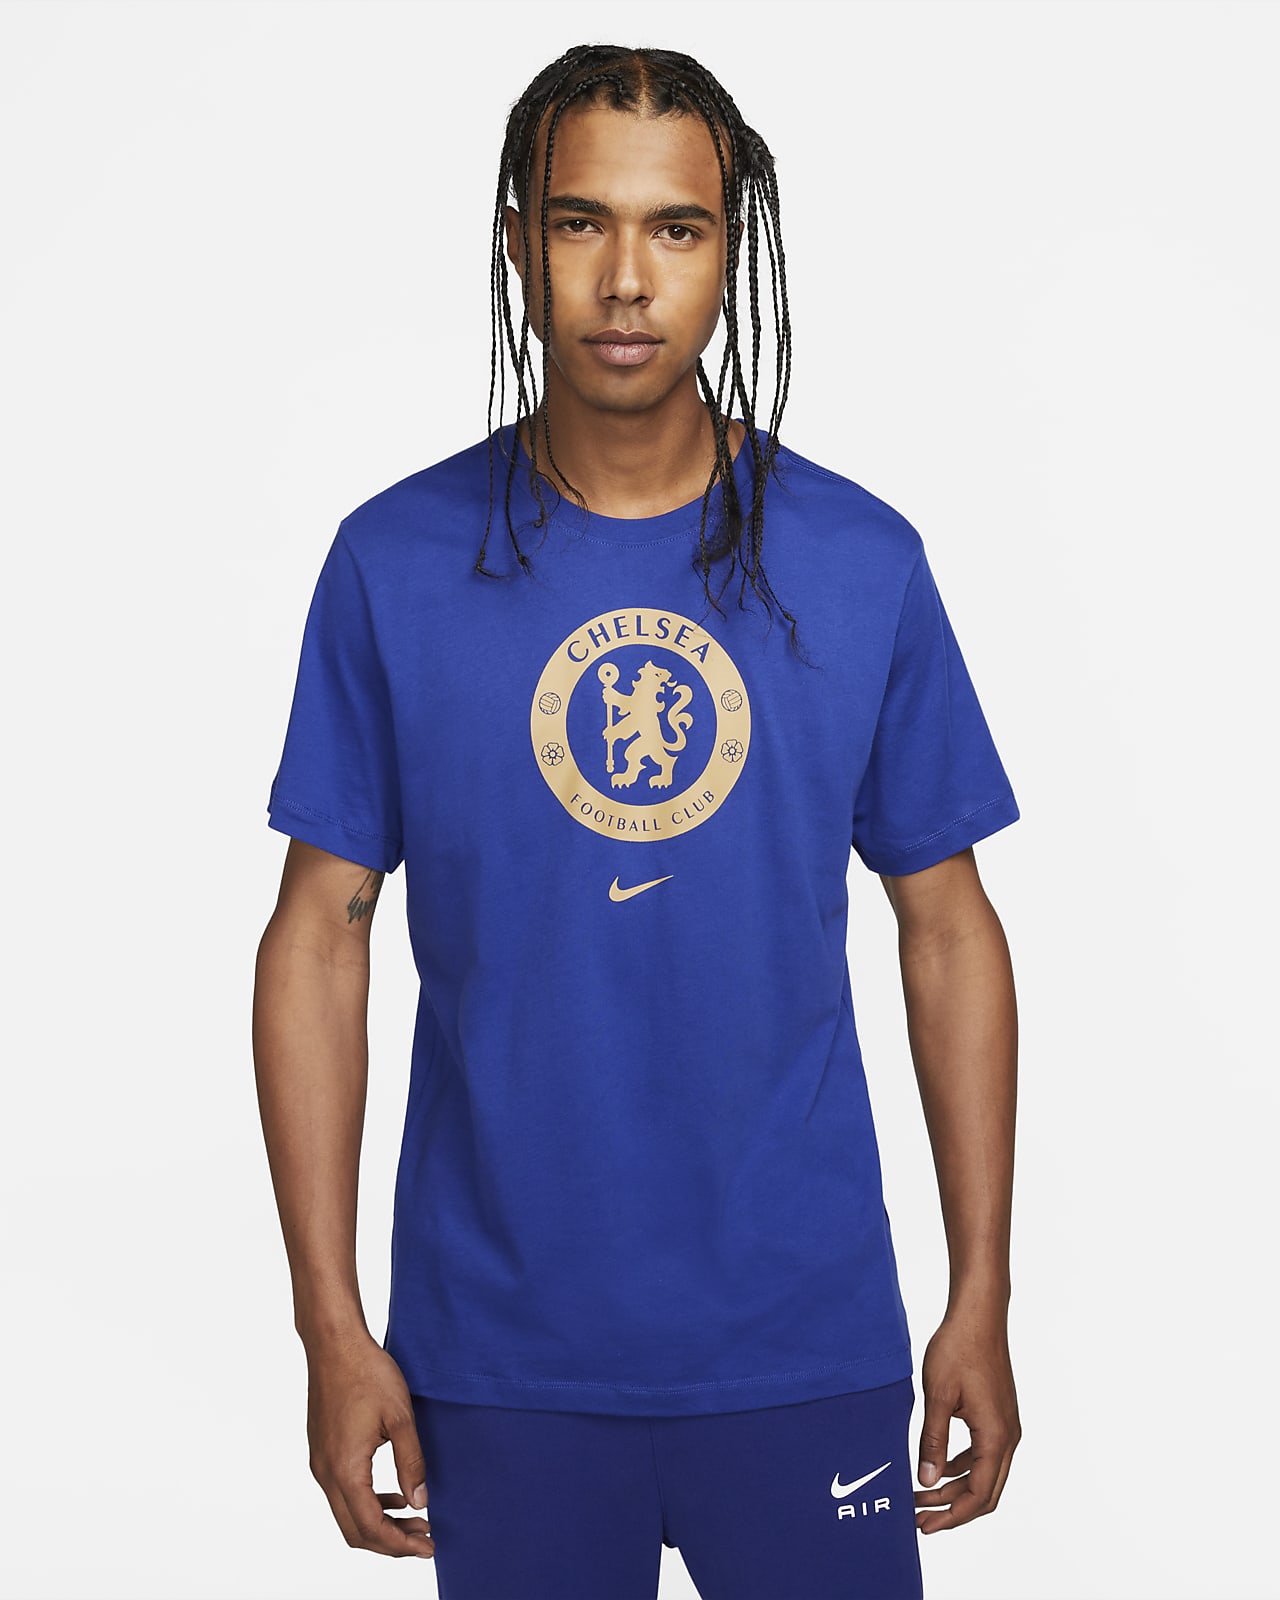 Chelsea FC Crest Men's Soccer T-Shirt